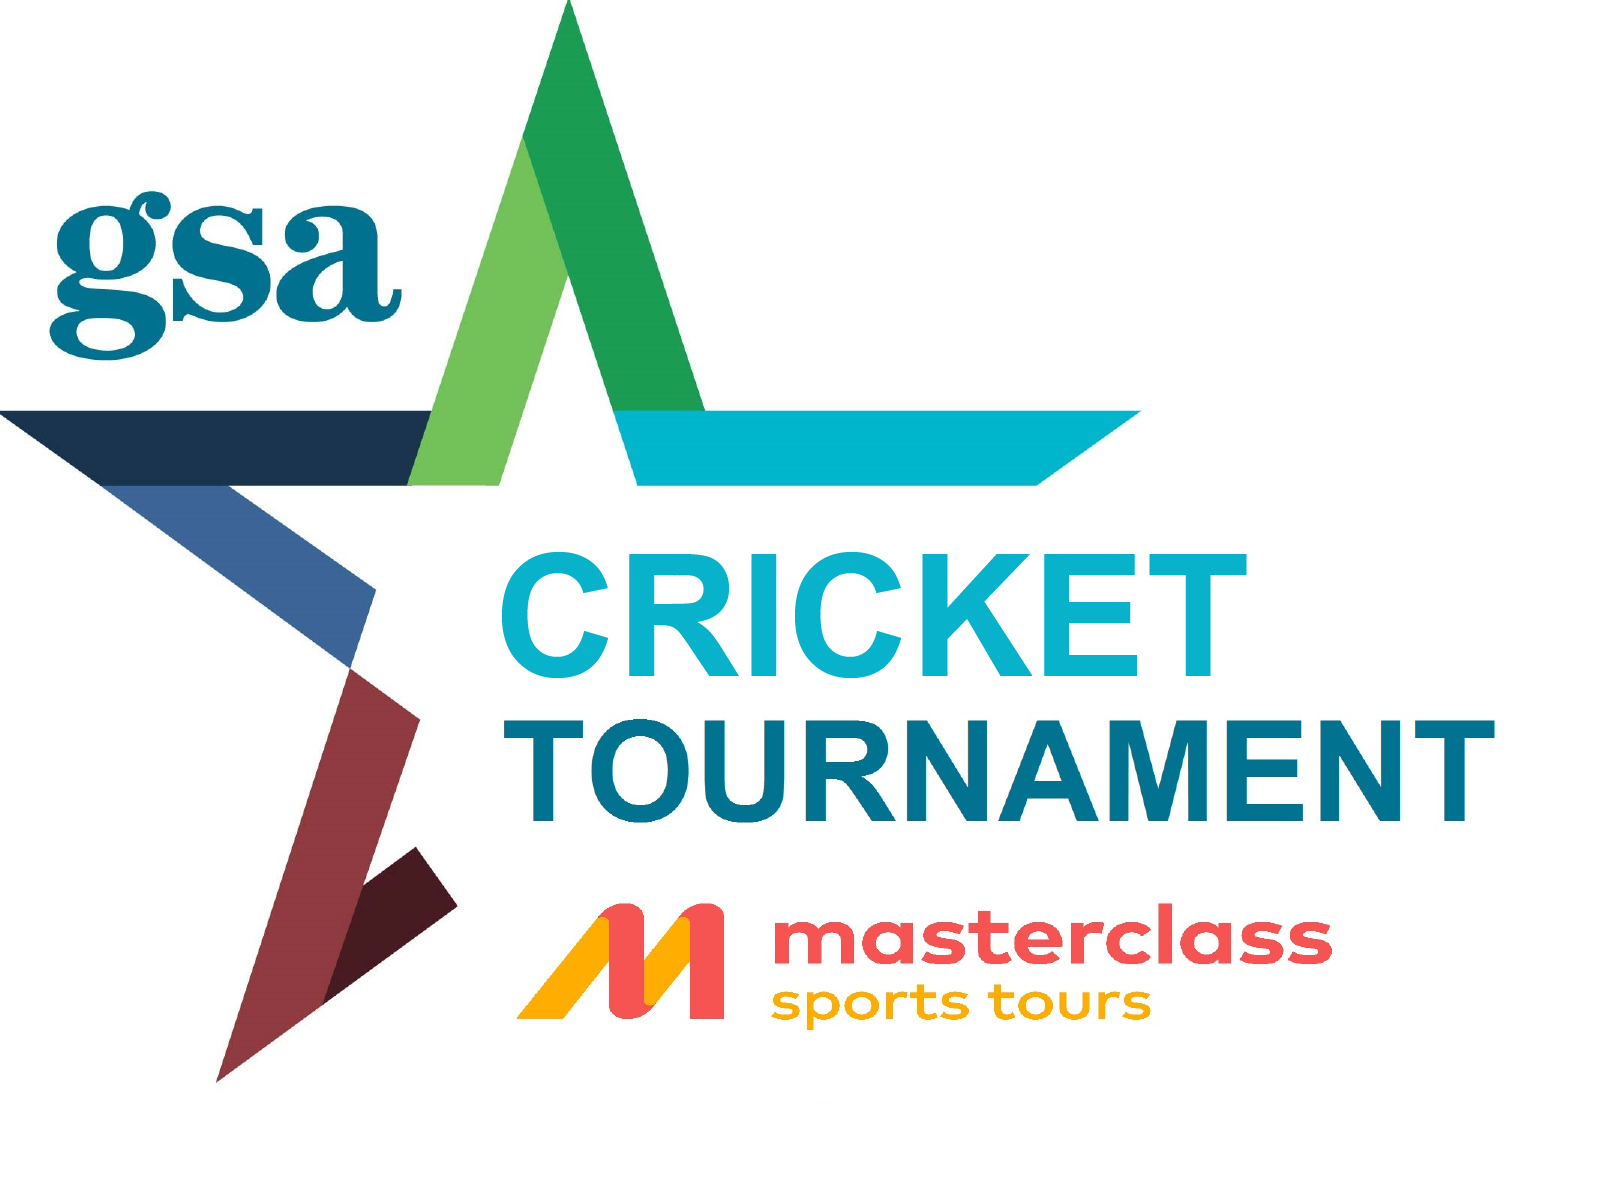 GSA Cricket Tournament from MasterClass